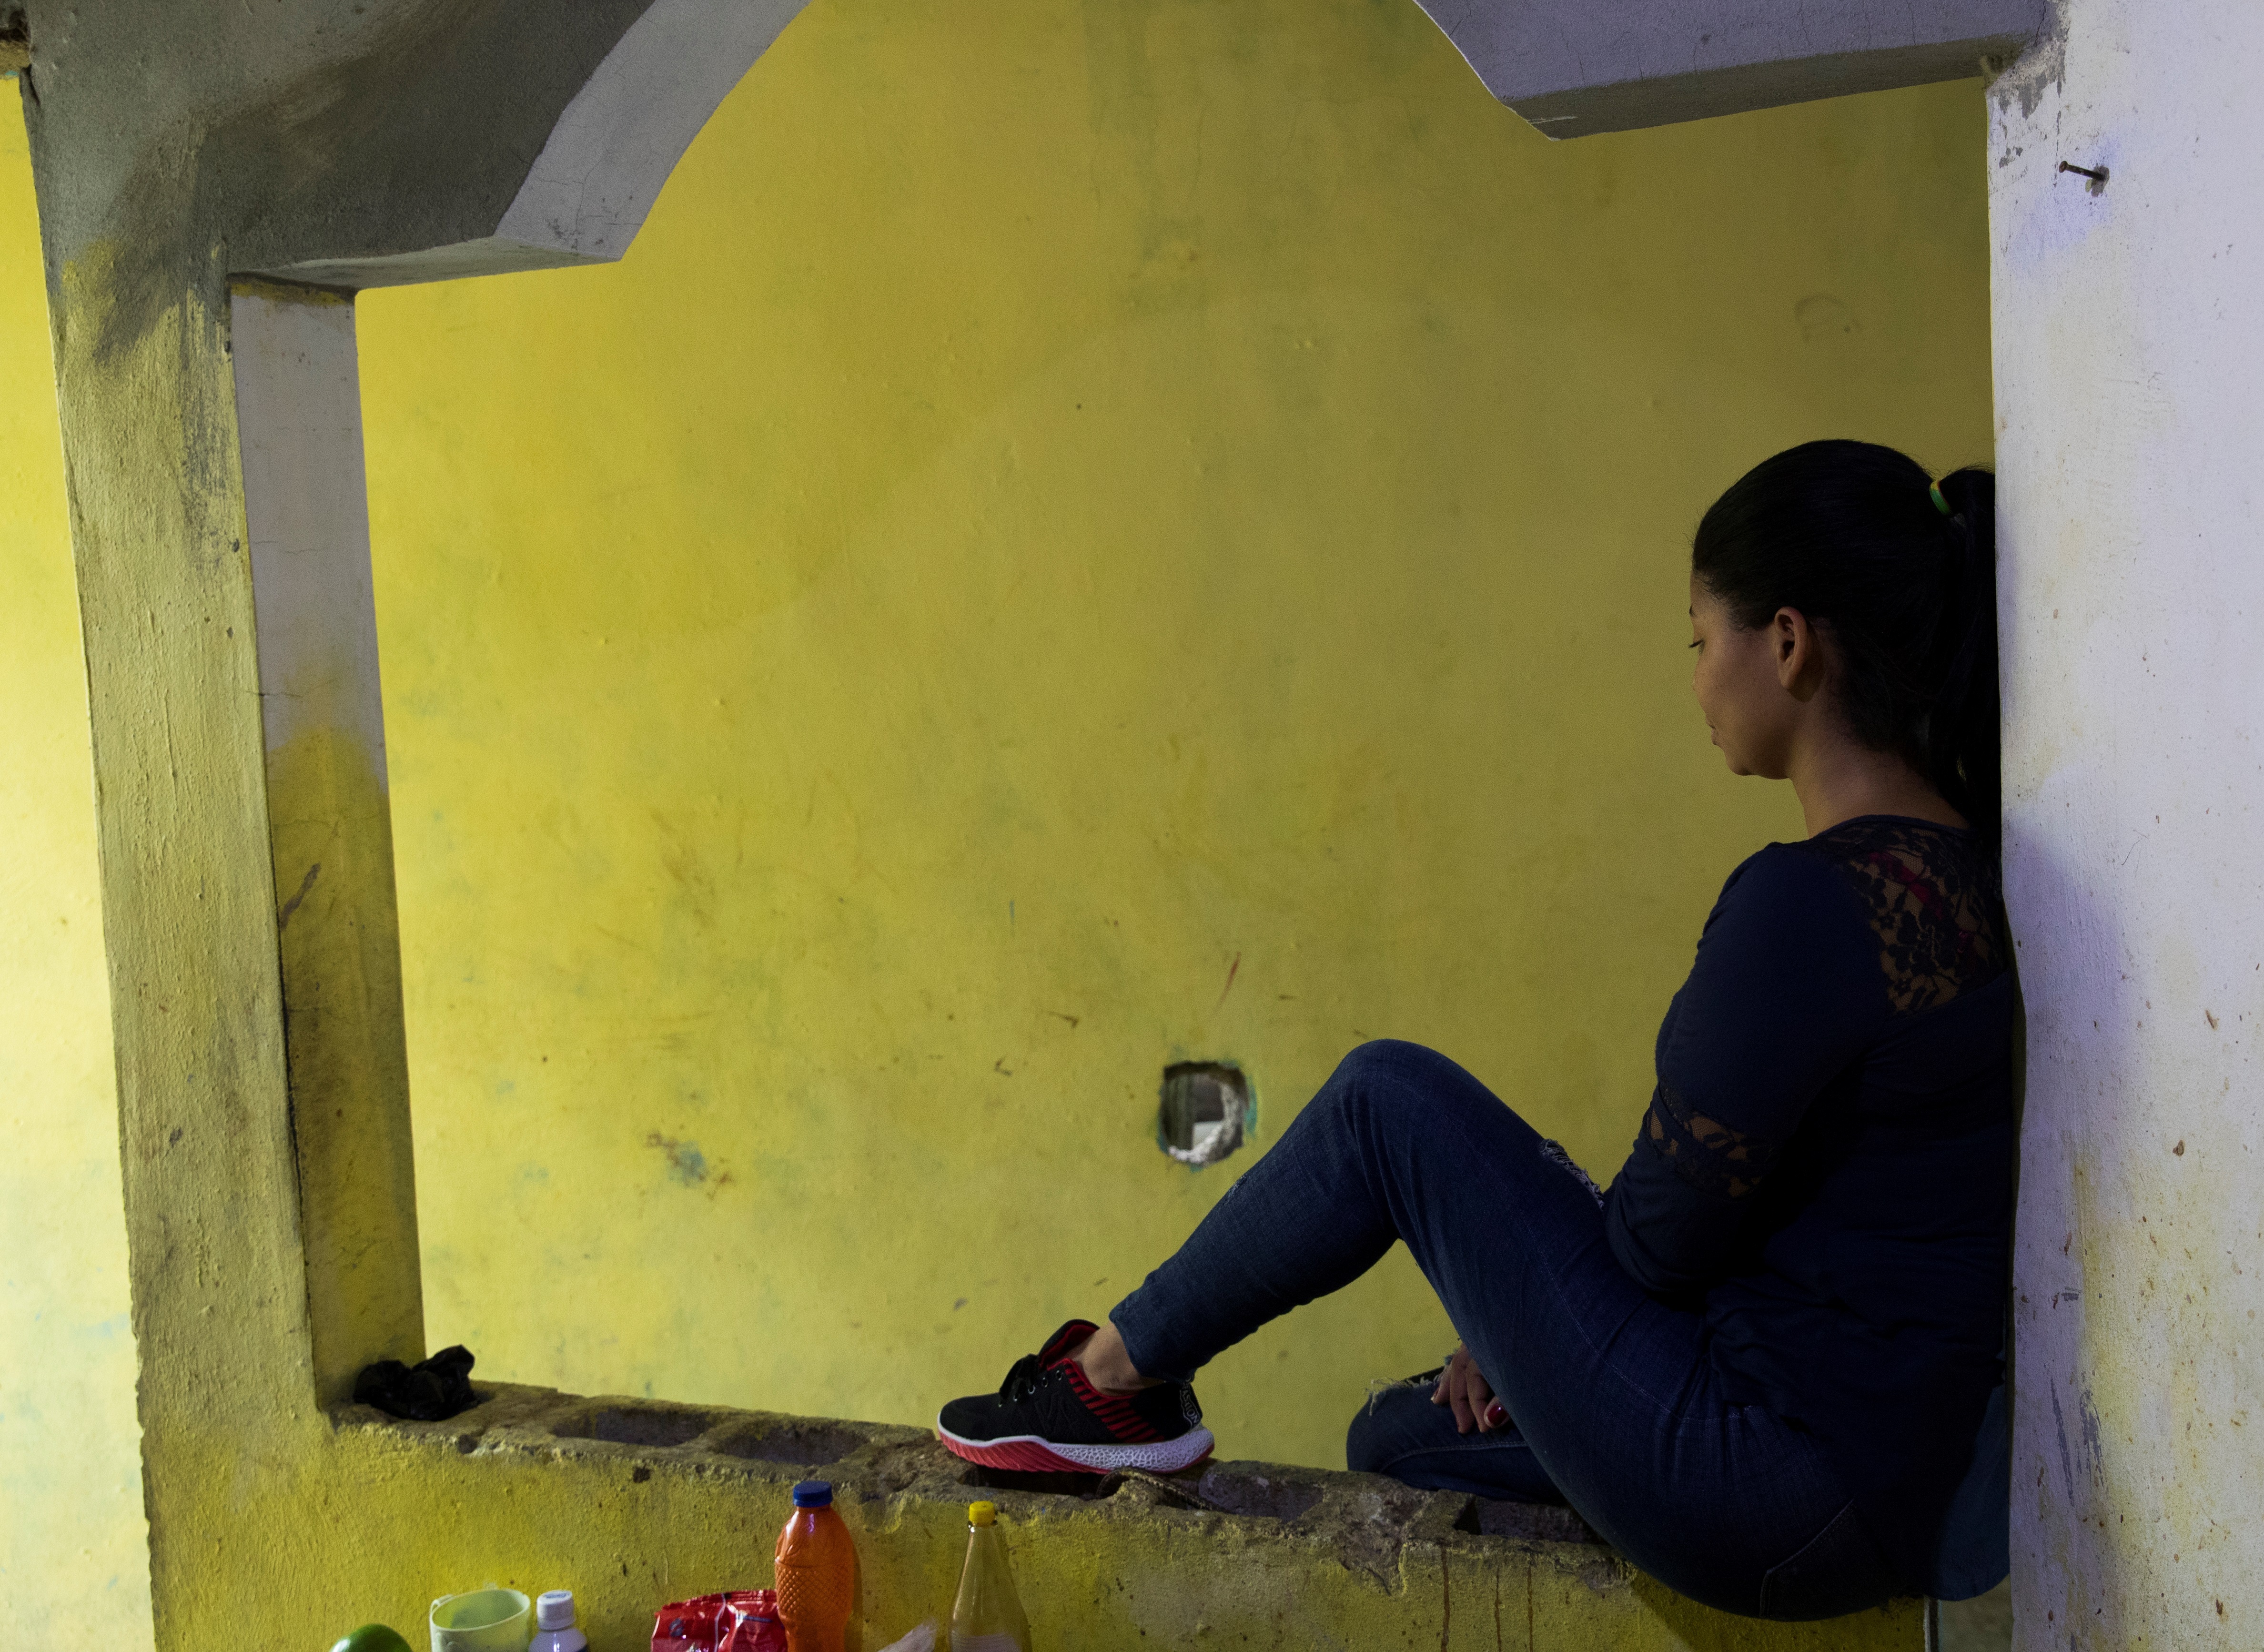 República Dominicana, el país de las niñas esposas (Fotos)